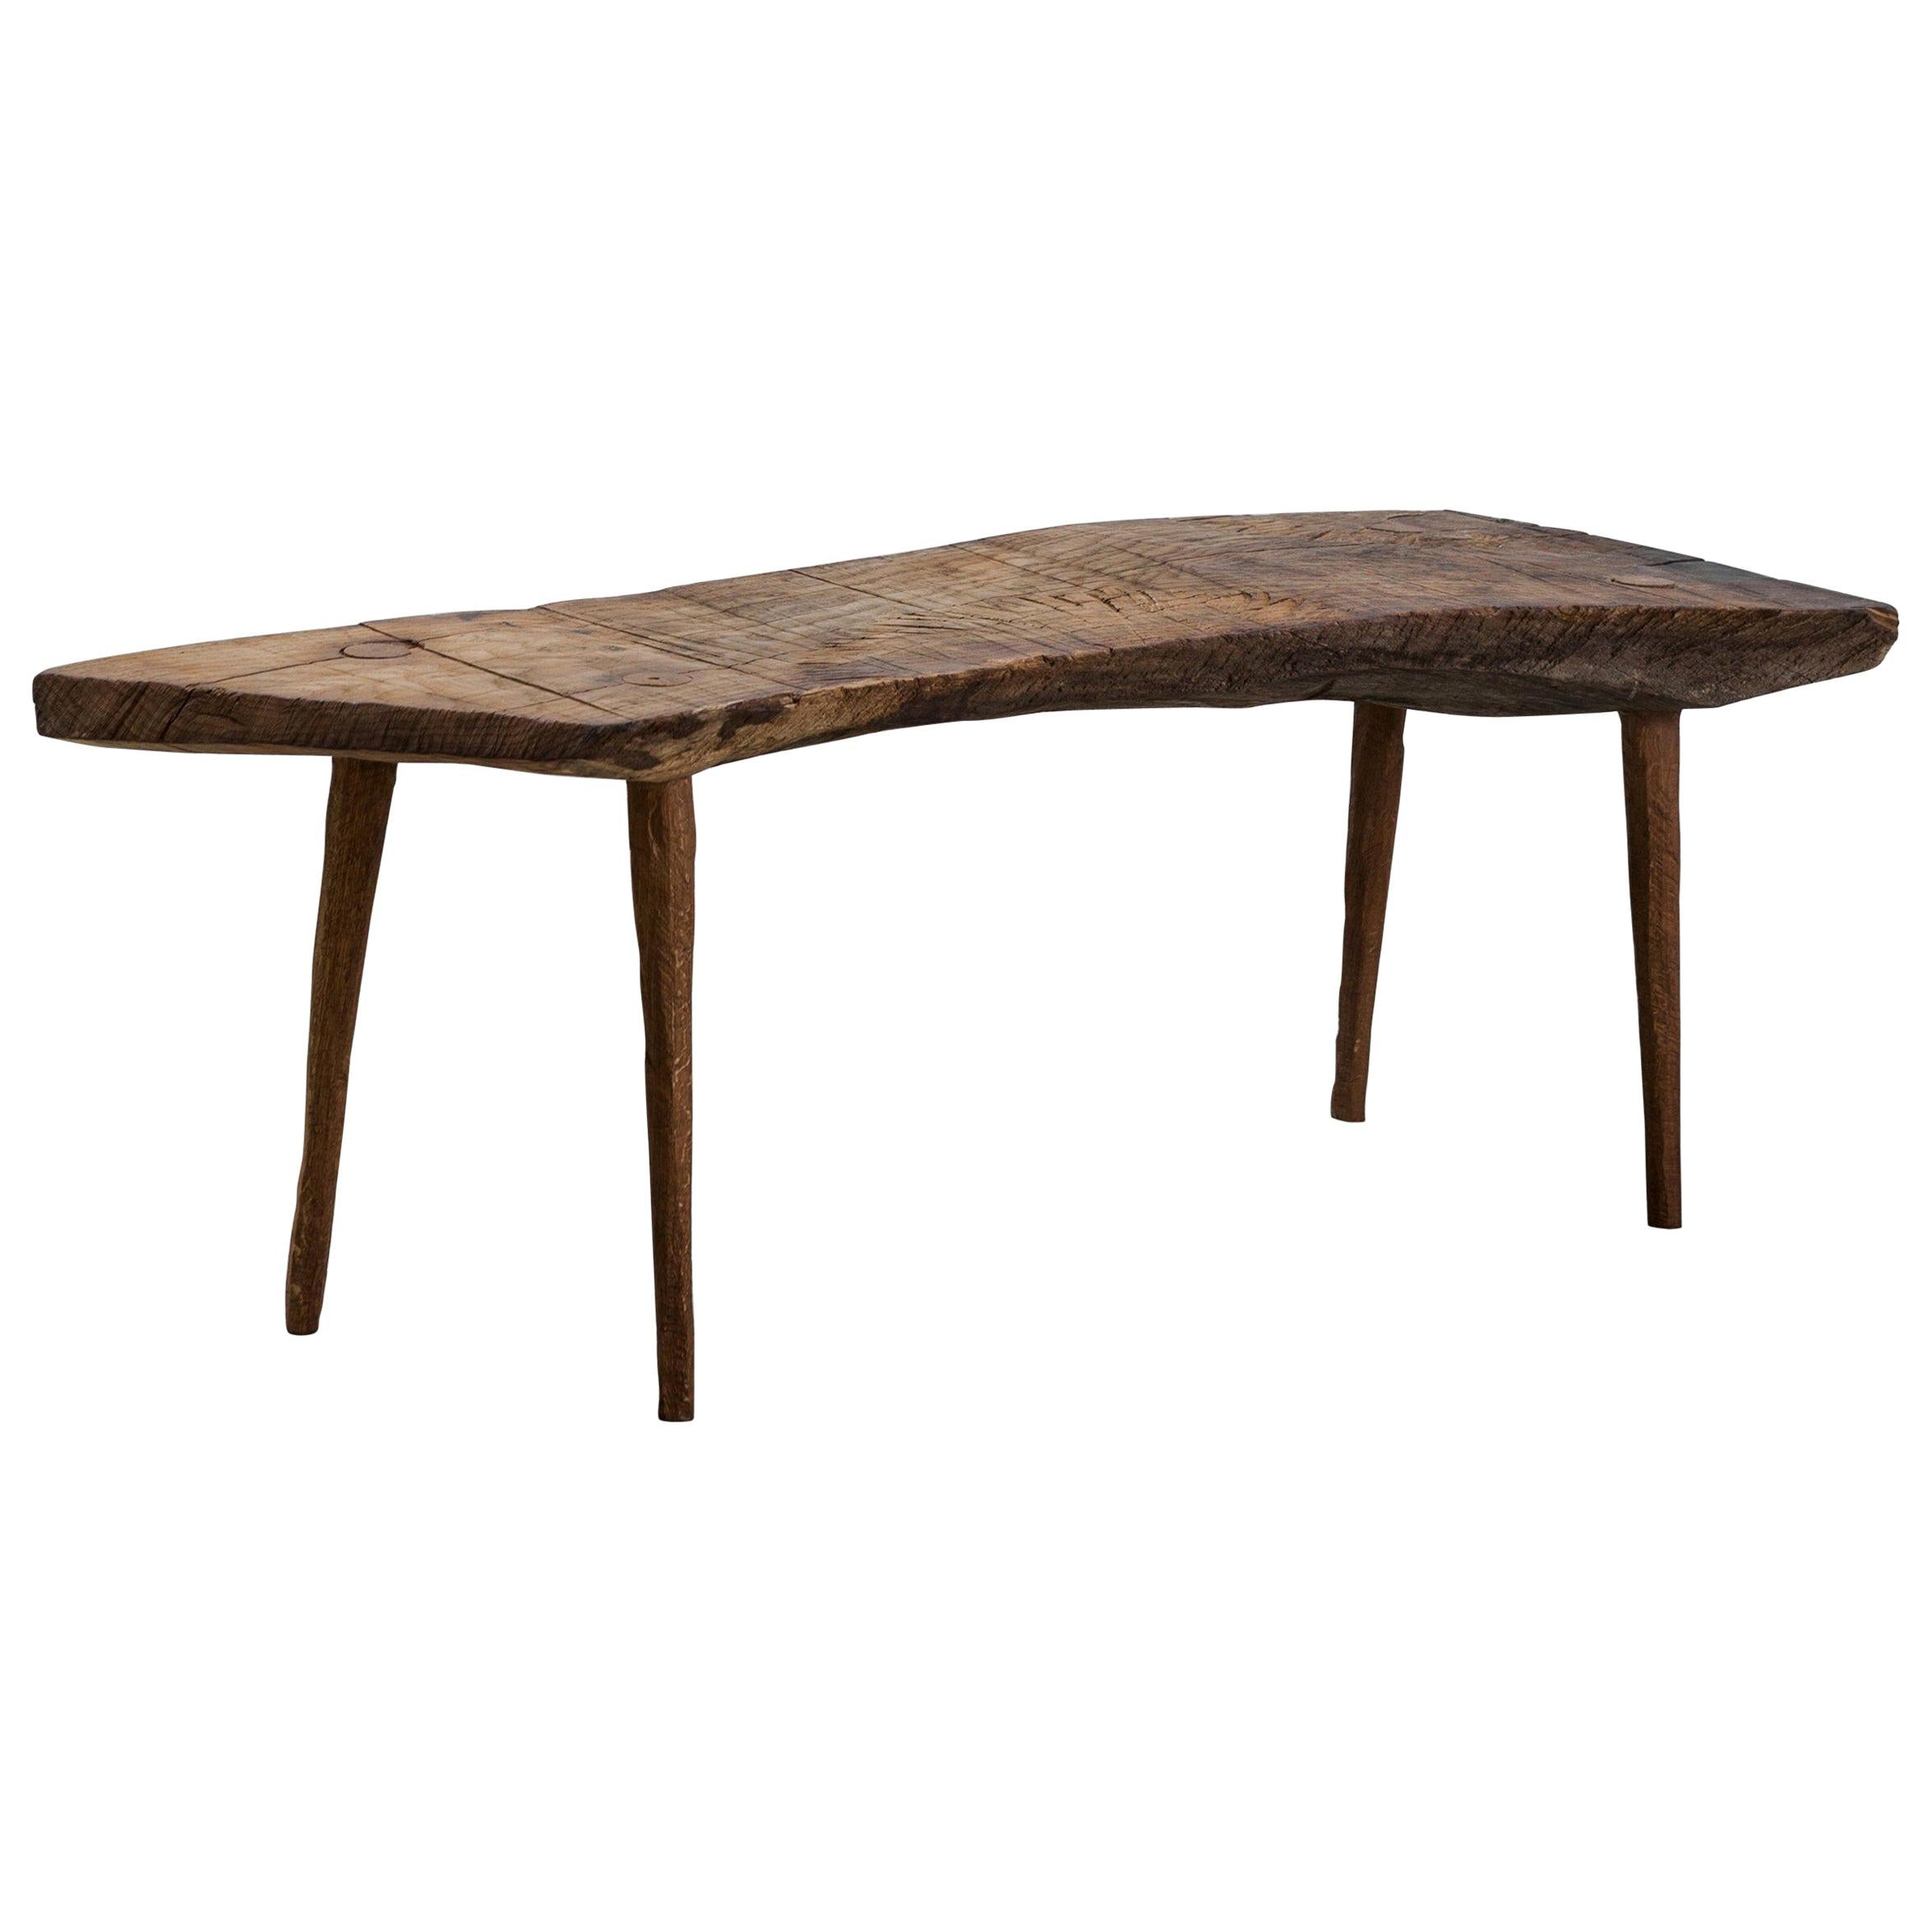 Petite table n°5 contemporaine de style brutaliste en chêne massif et huile de lin